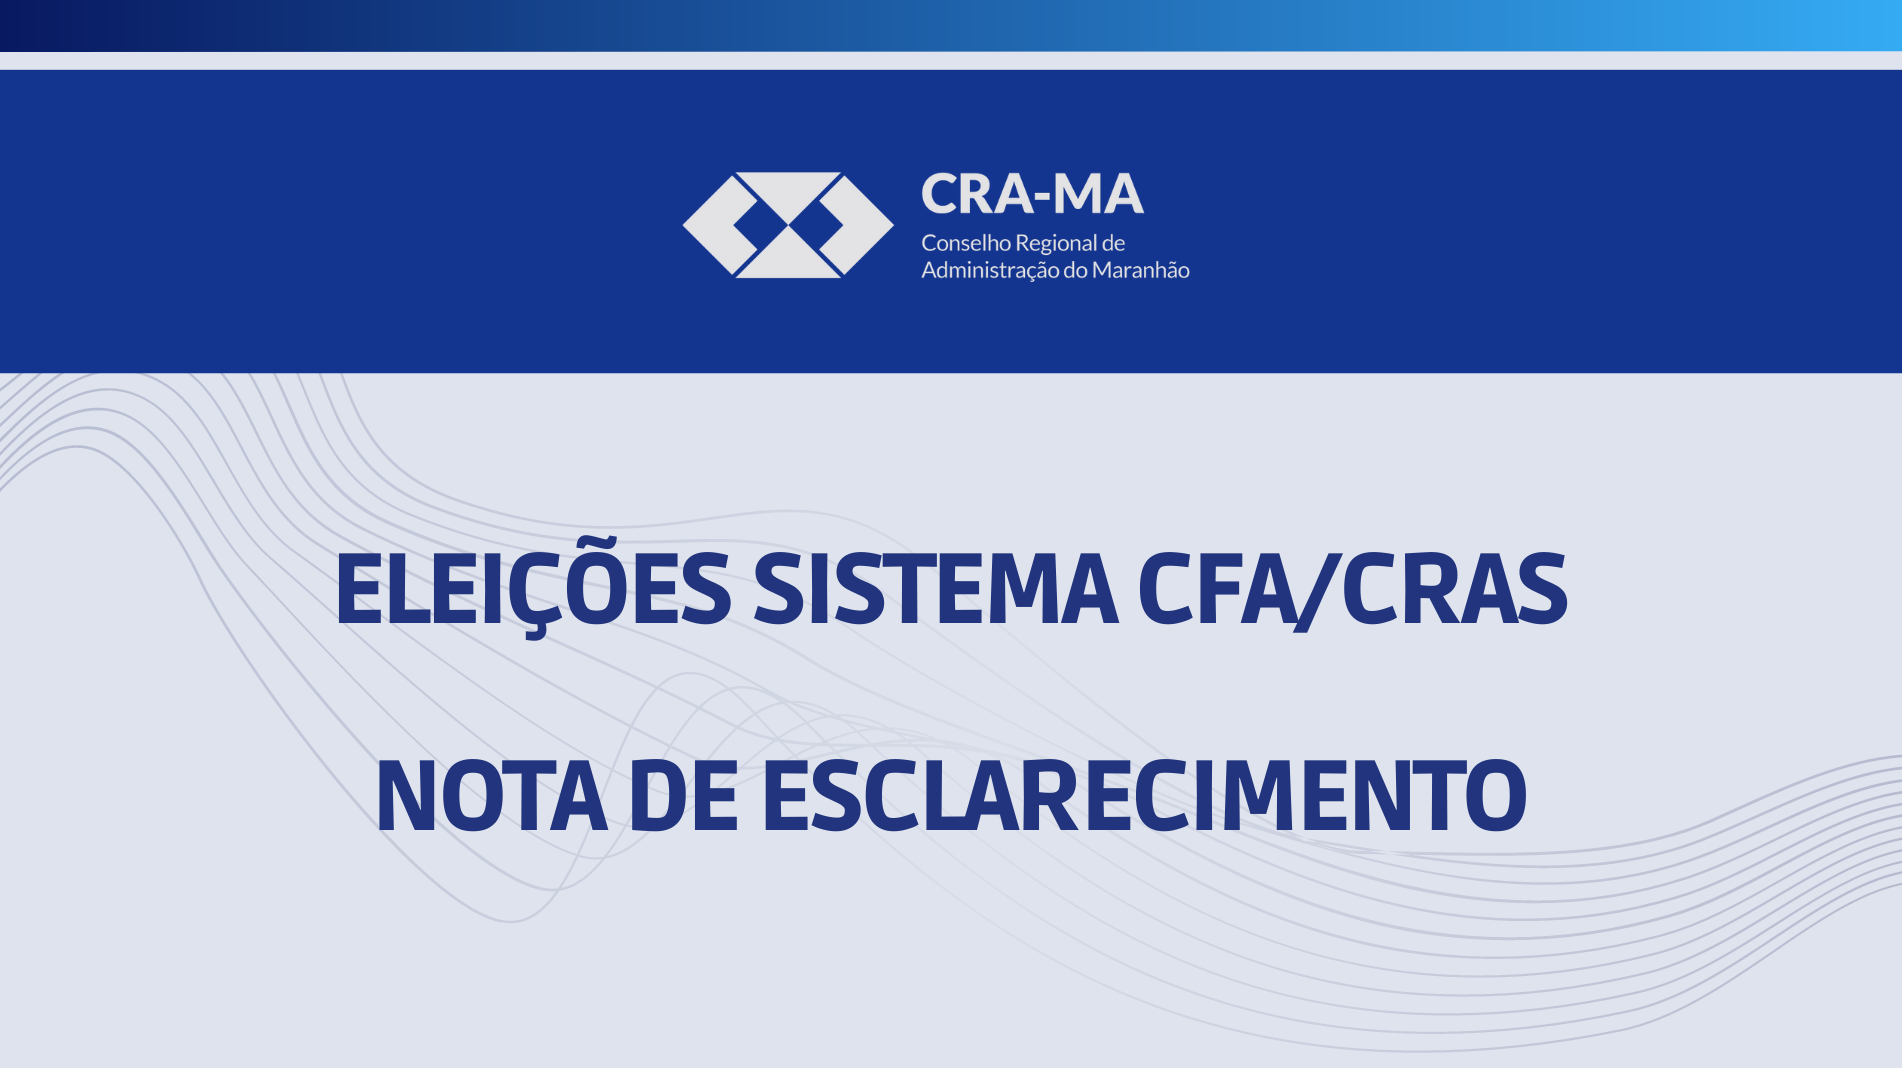 You are currently viewing ELEIÇÕES CFA/CRAs: NOTA DE ESCLARECIMENTO